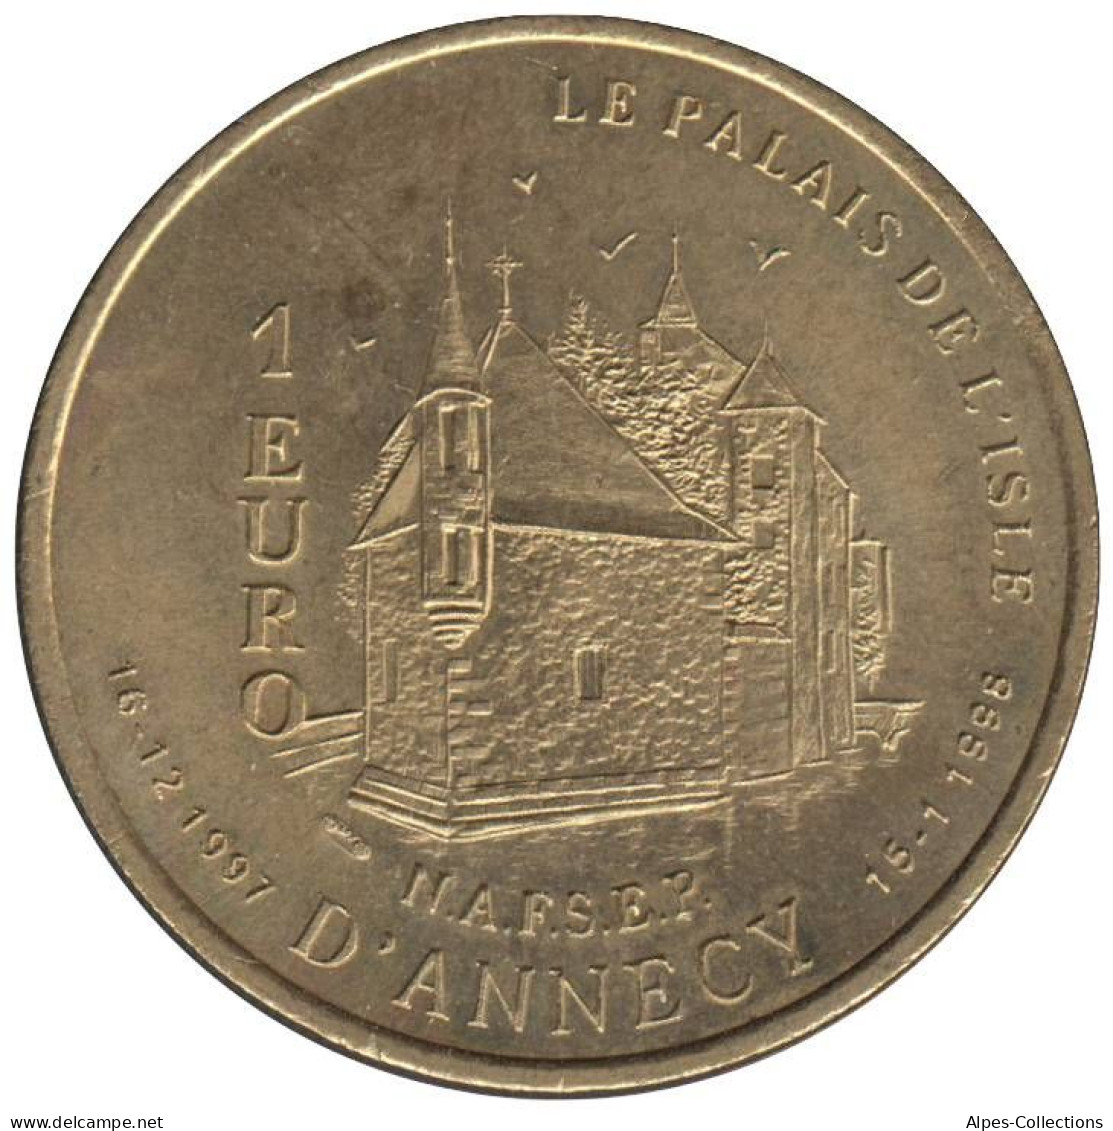 ANNECY - EU0010.4 - 1 EURO DES VILLES - Réf: T233 - 1997 - Euros Des Villes